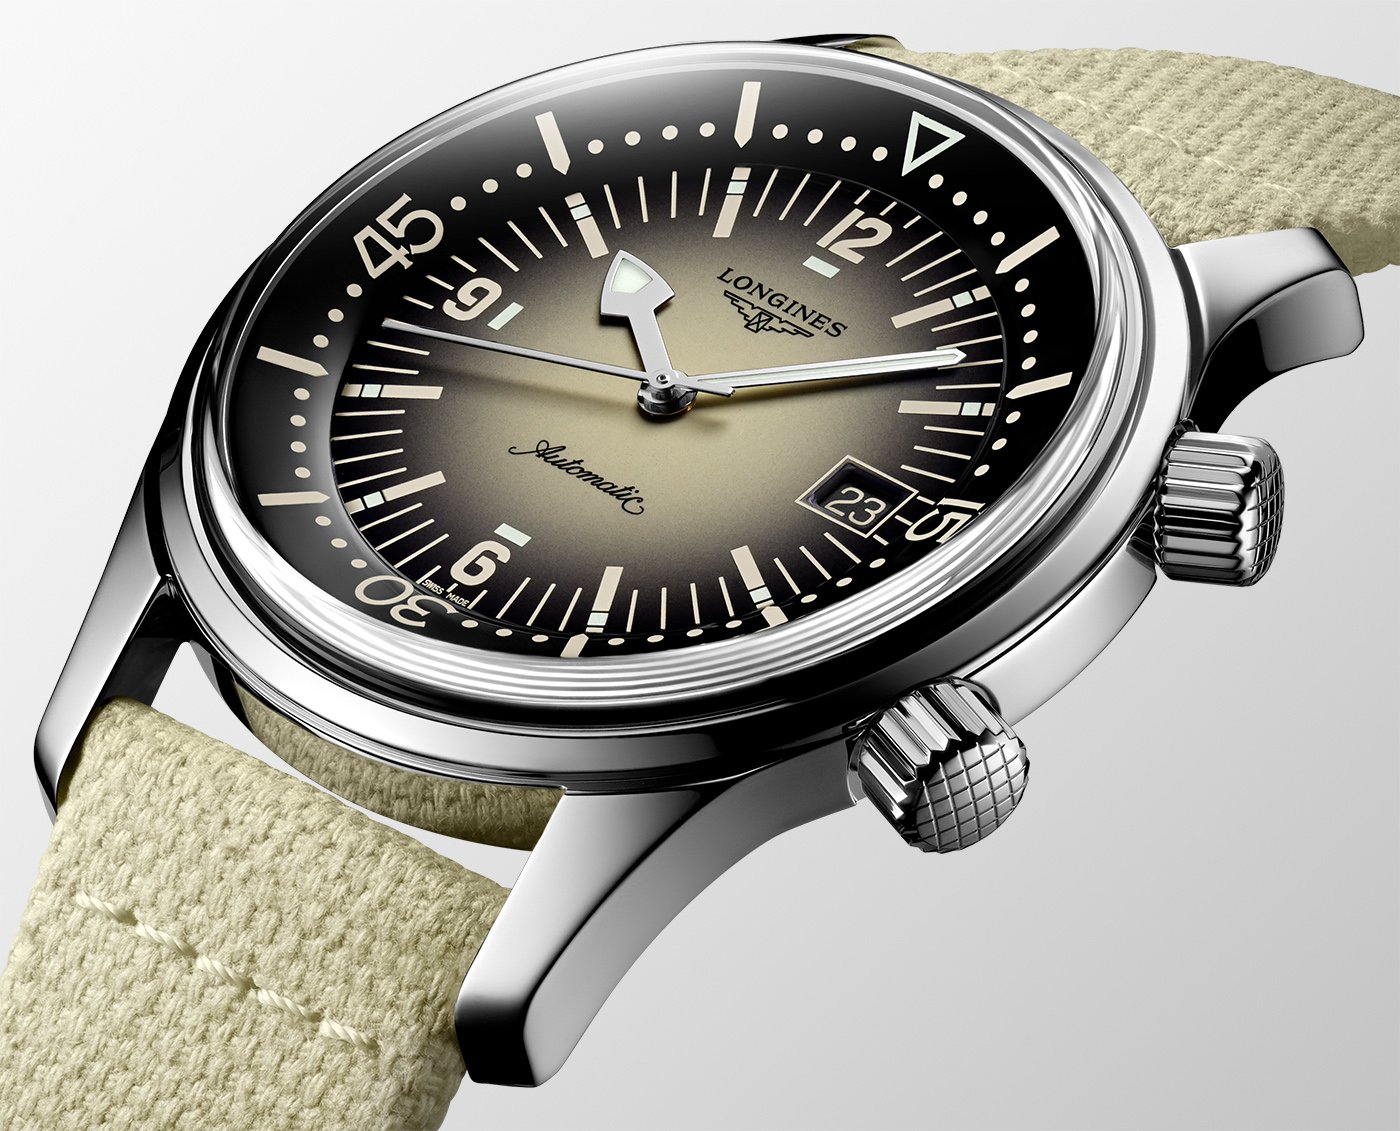 Longines представляет новые модели часов Legend Diver диаметром 36 и 42 мм